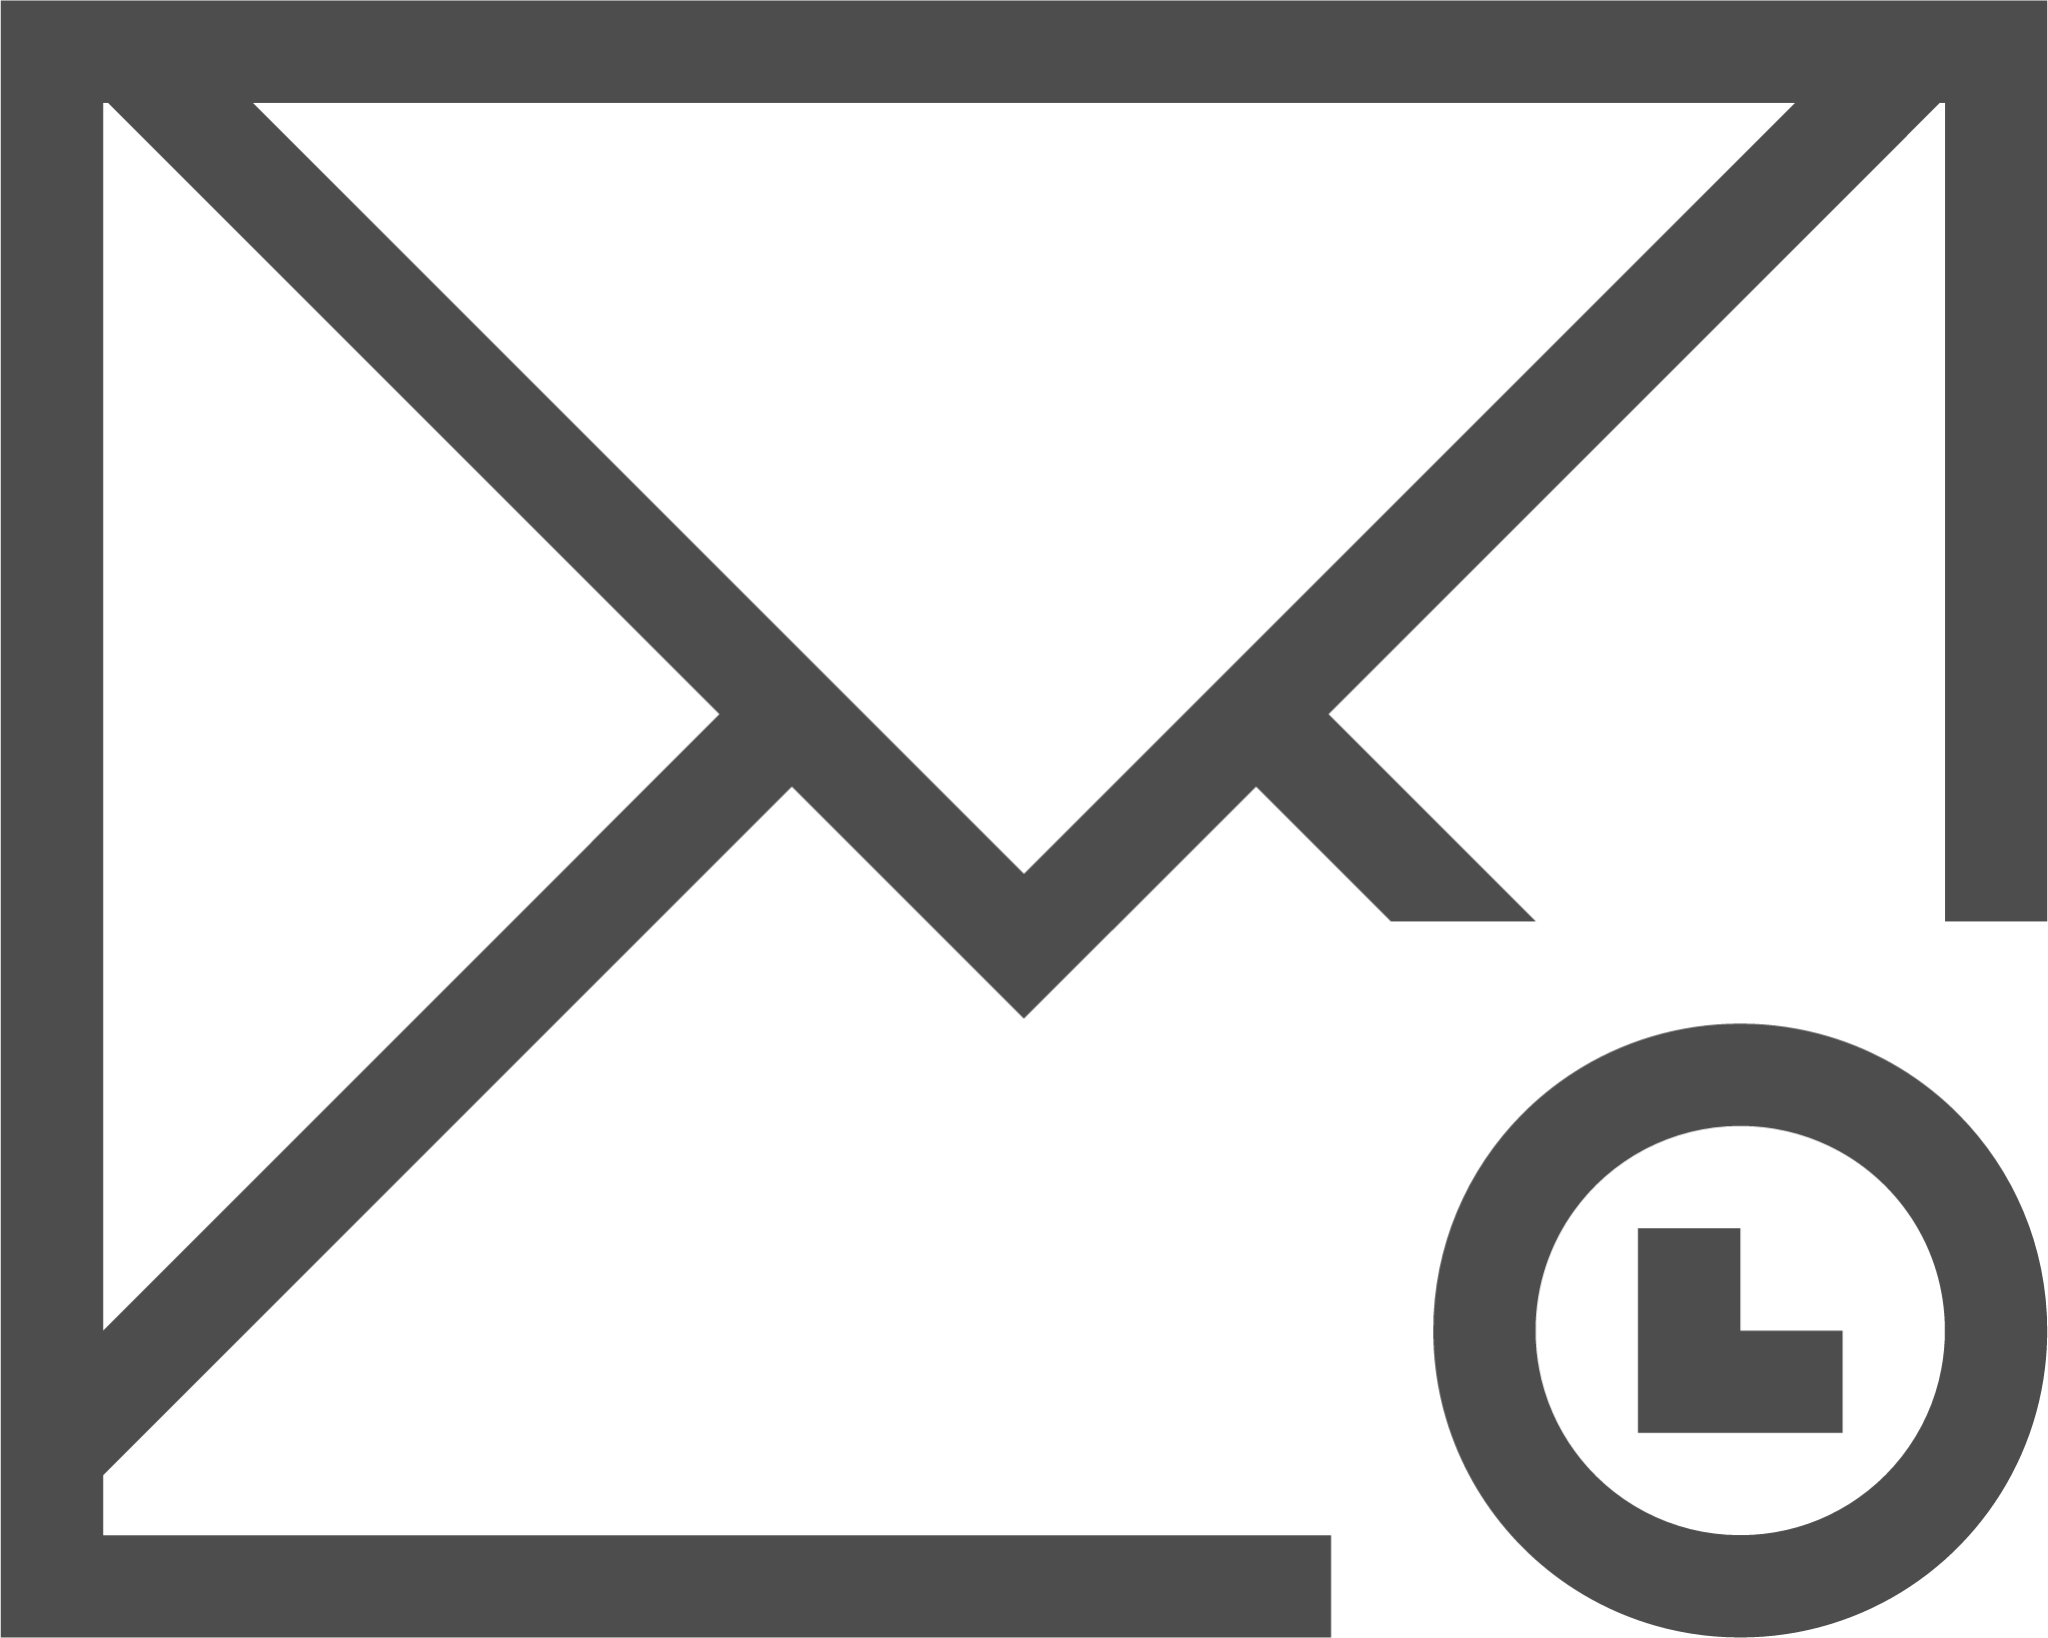 mail queue icon